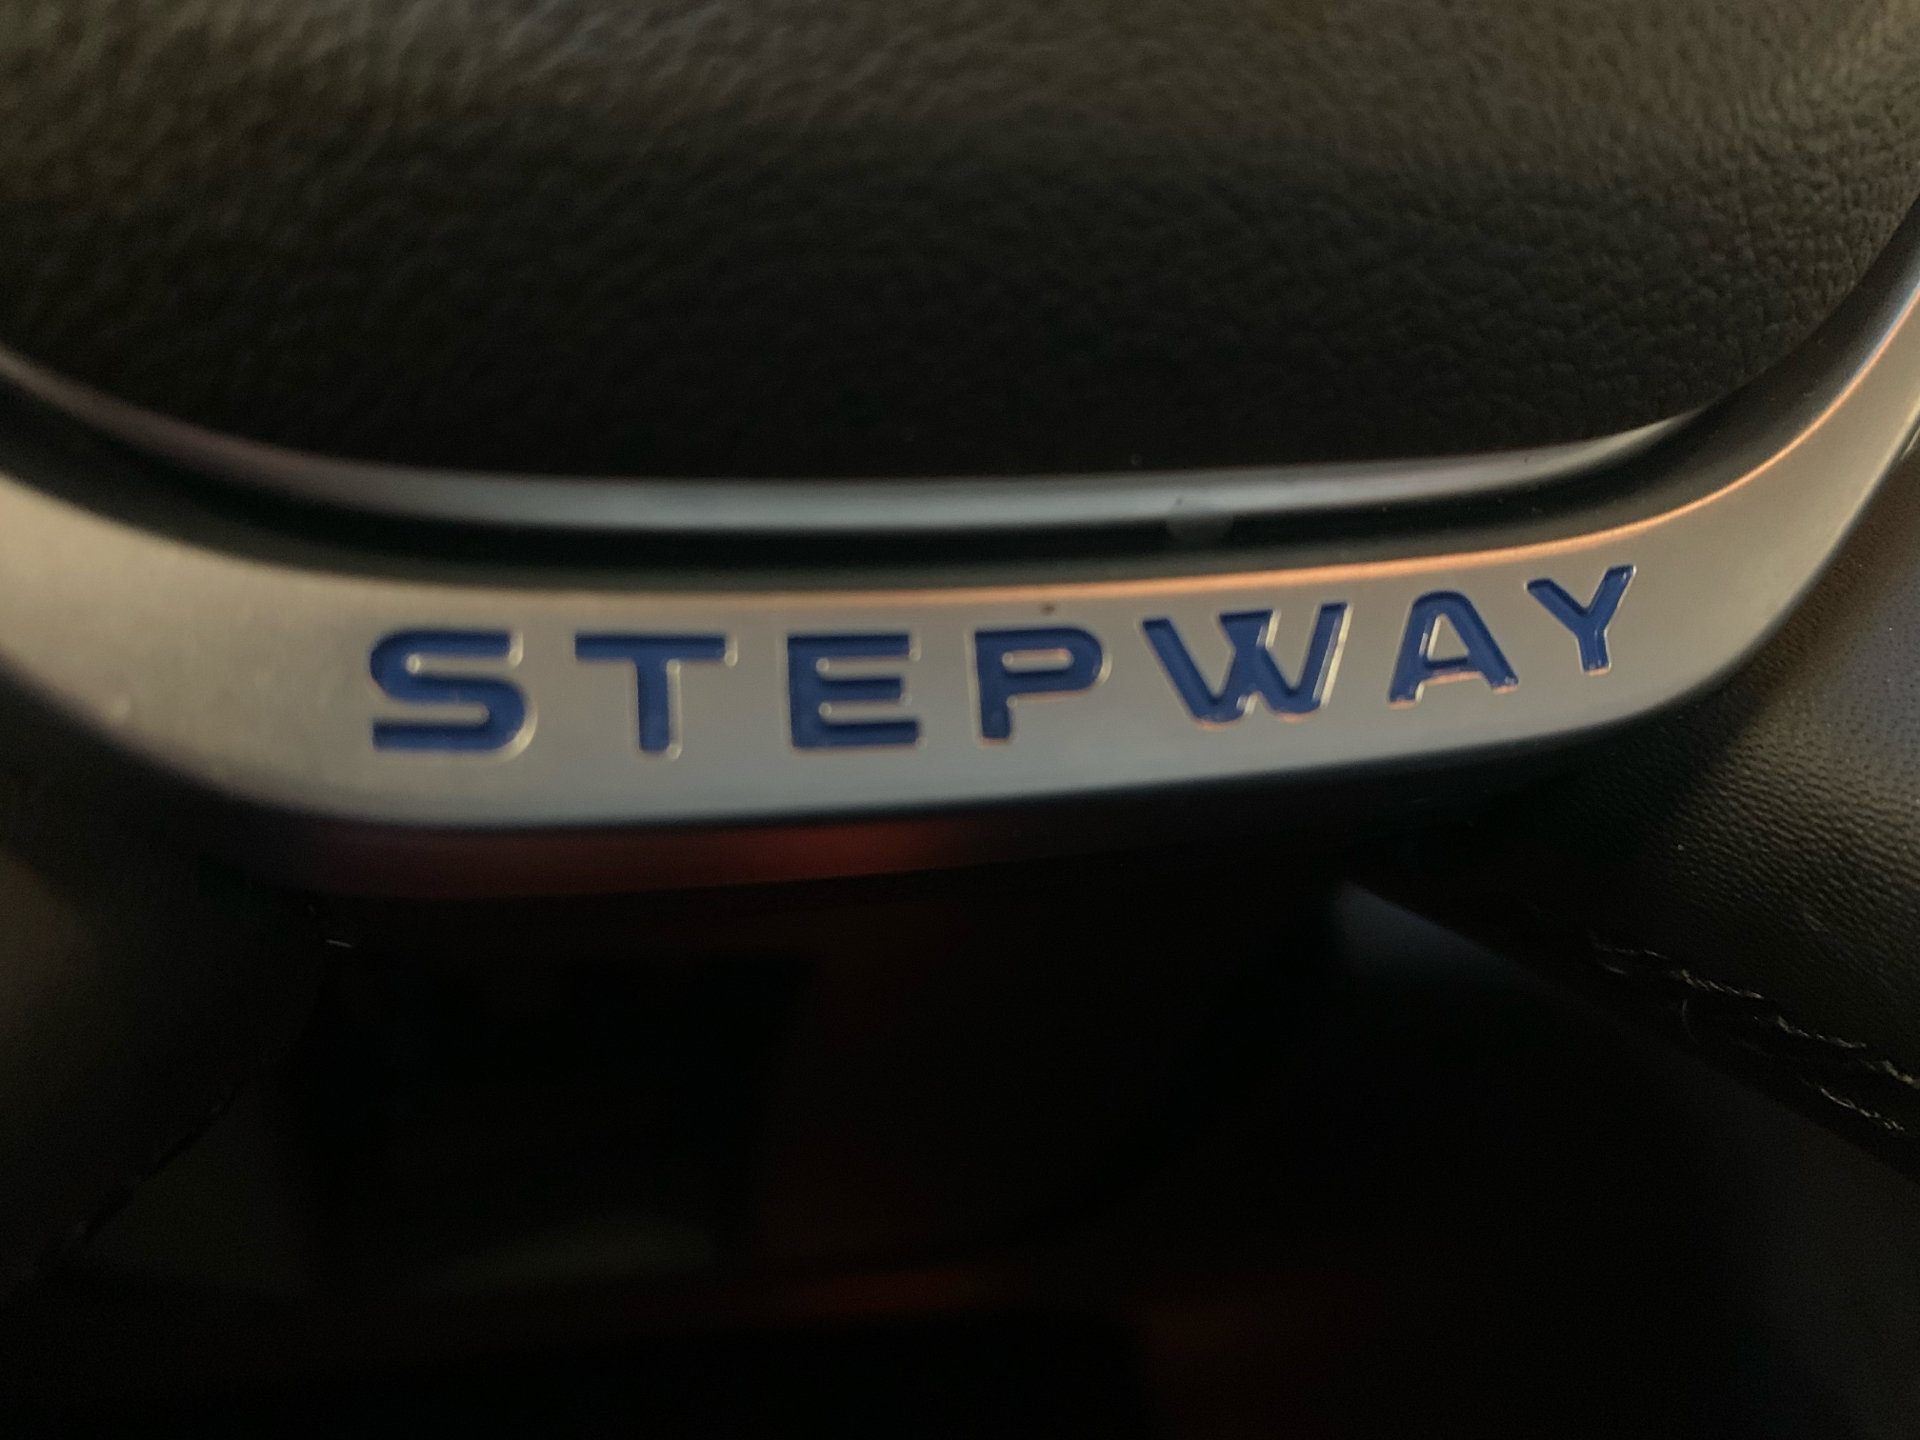 Billede af Dacia Sandero 0,9 Tce Stepway Start/Stop Easy-R 90HK 5d Aut.